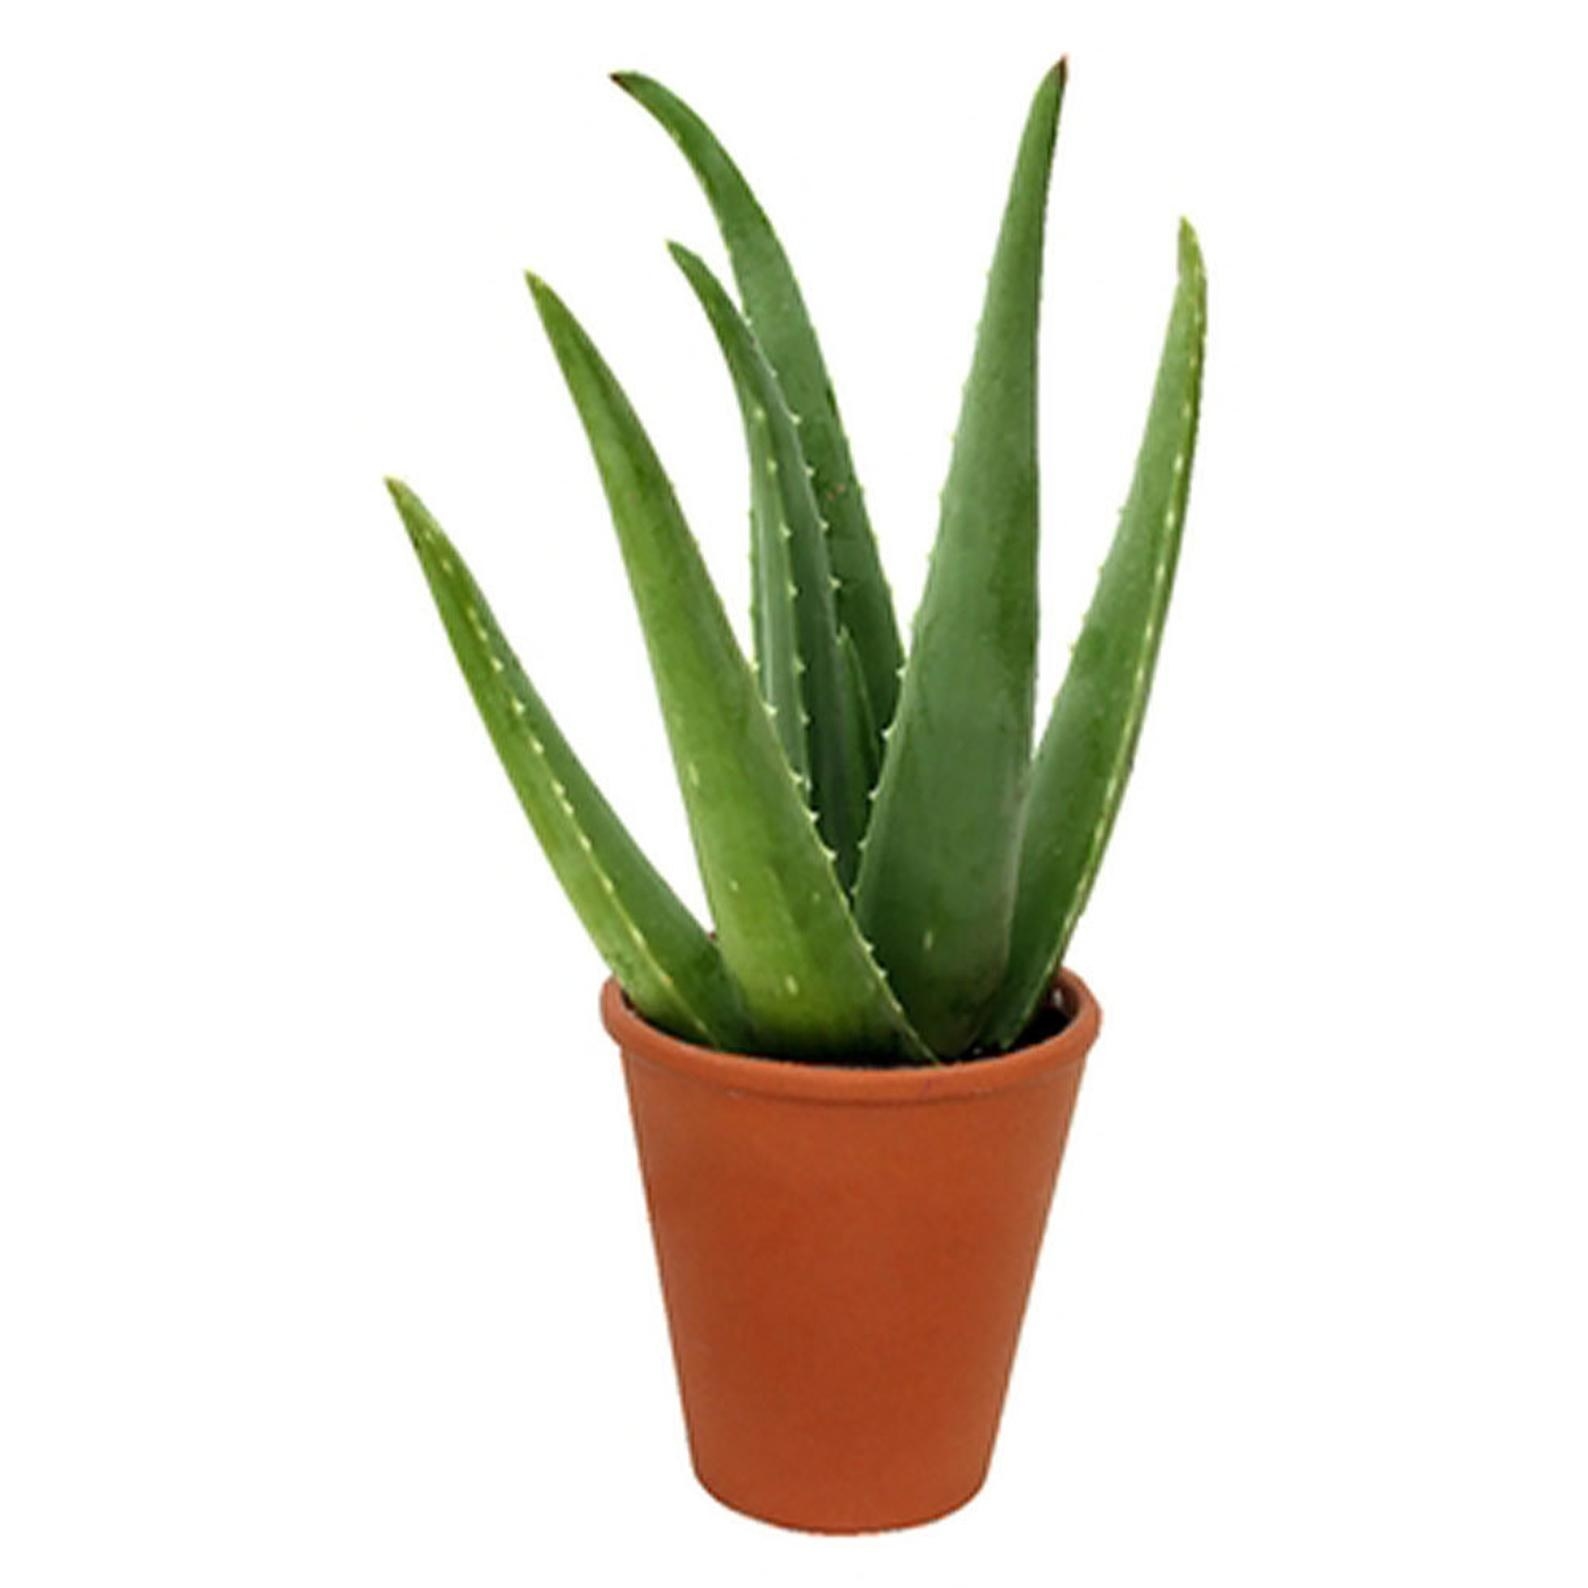 An Aloe plant